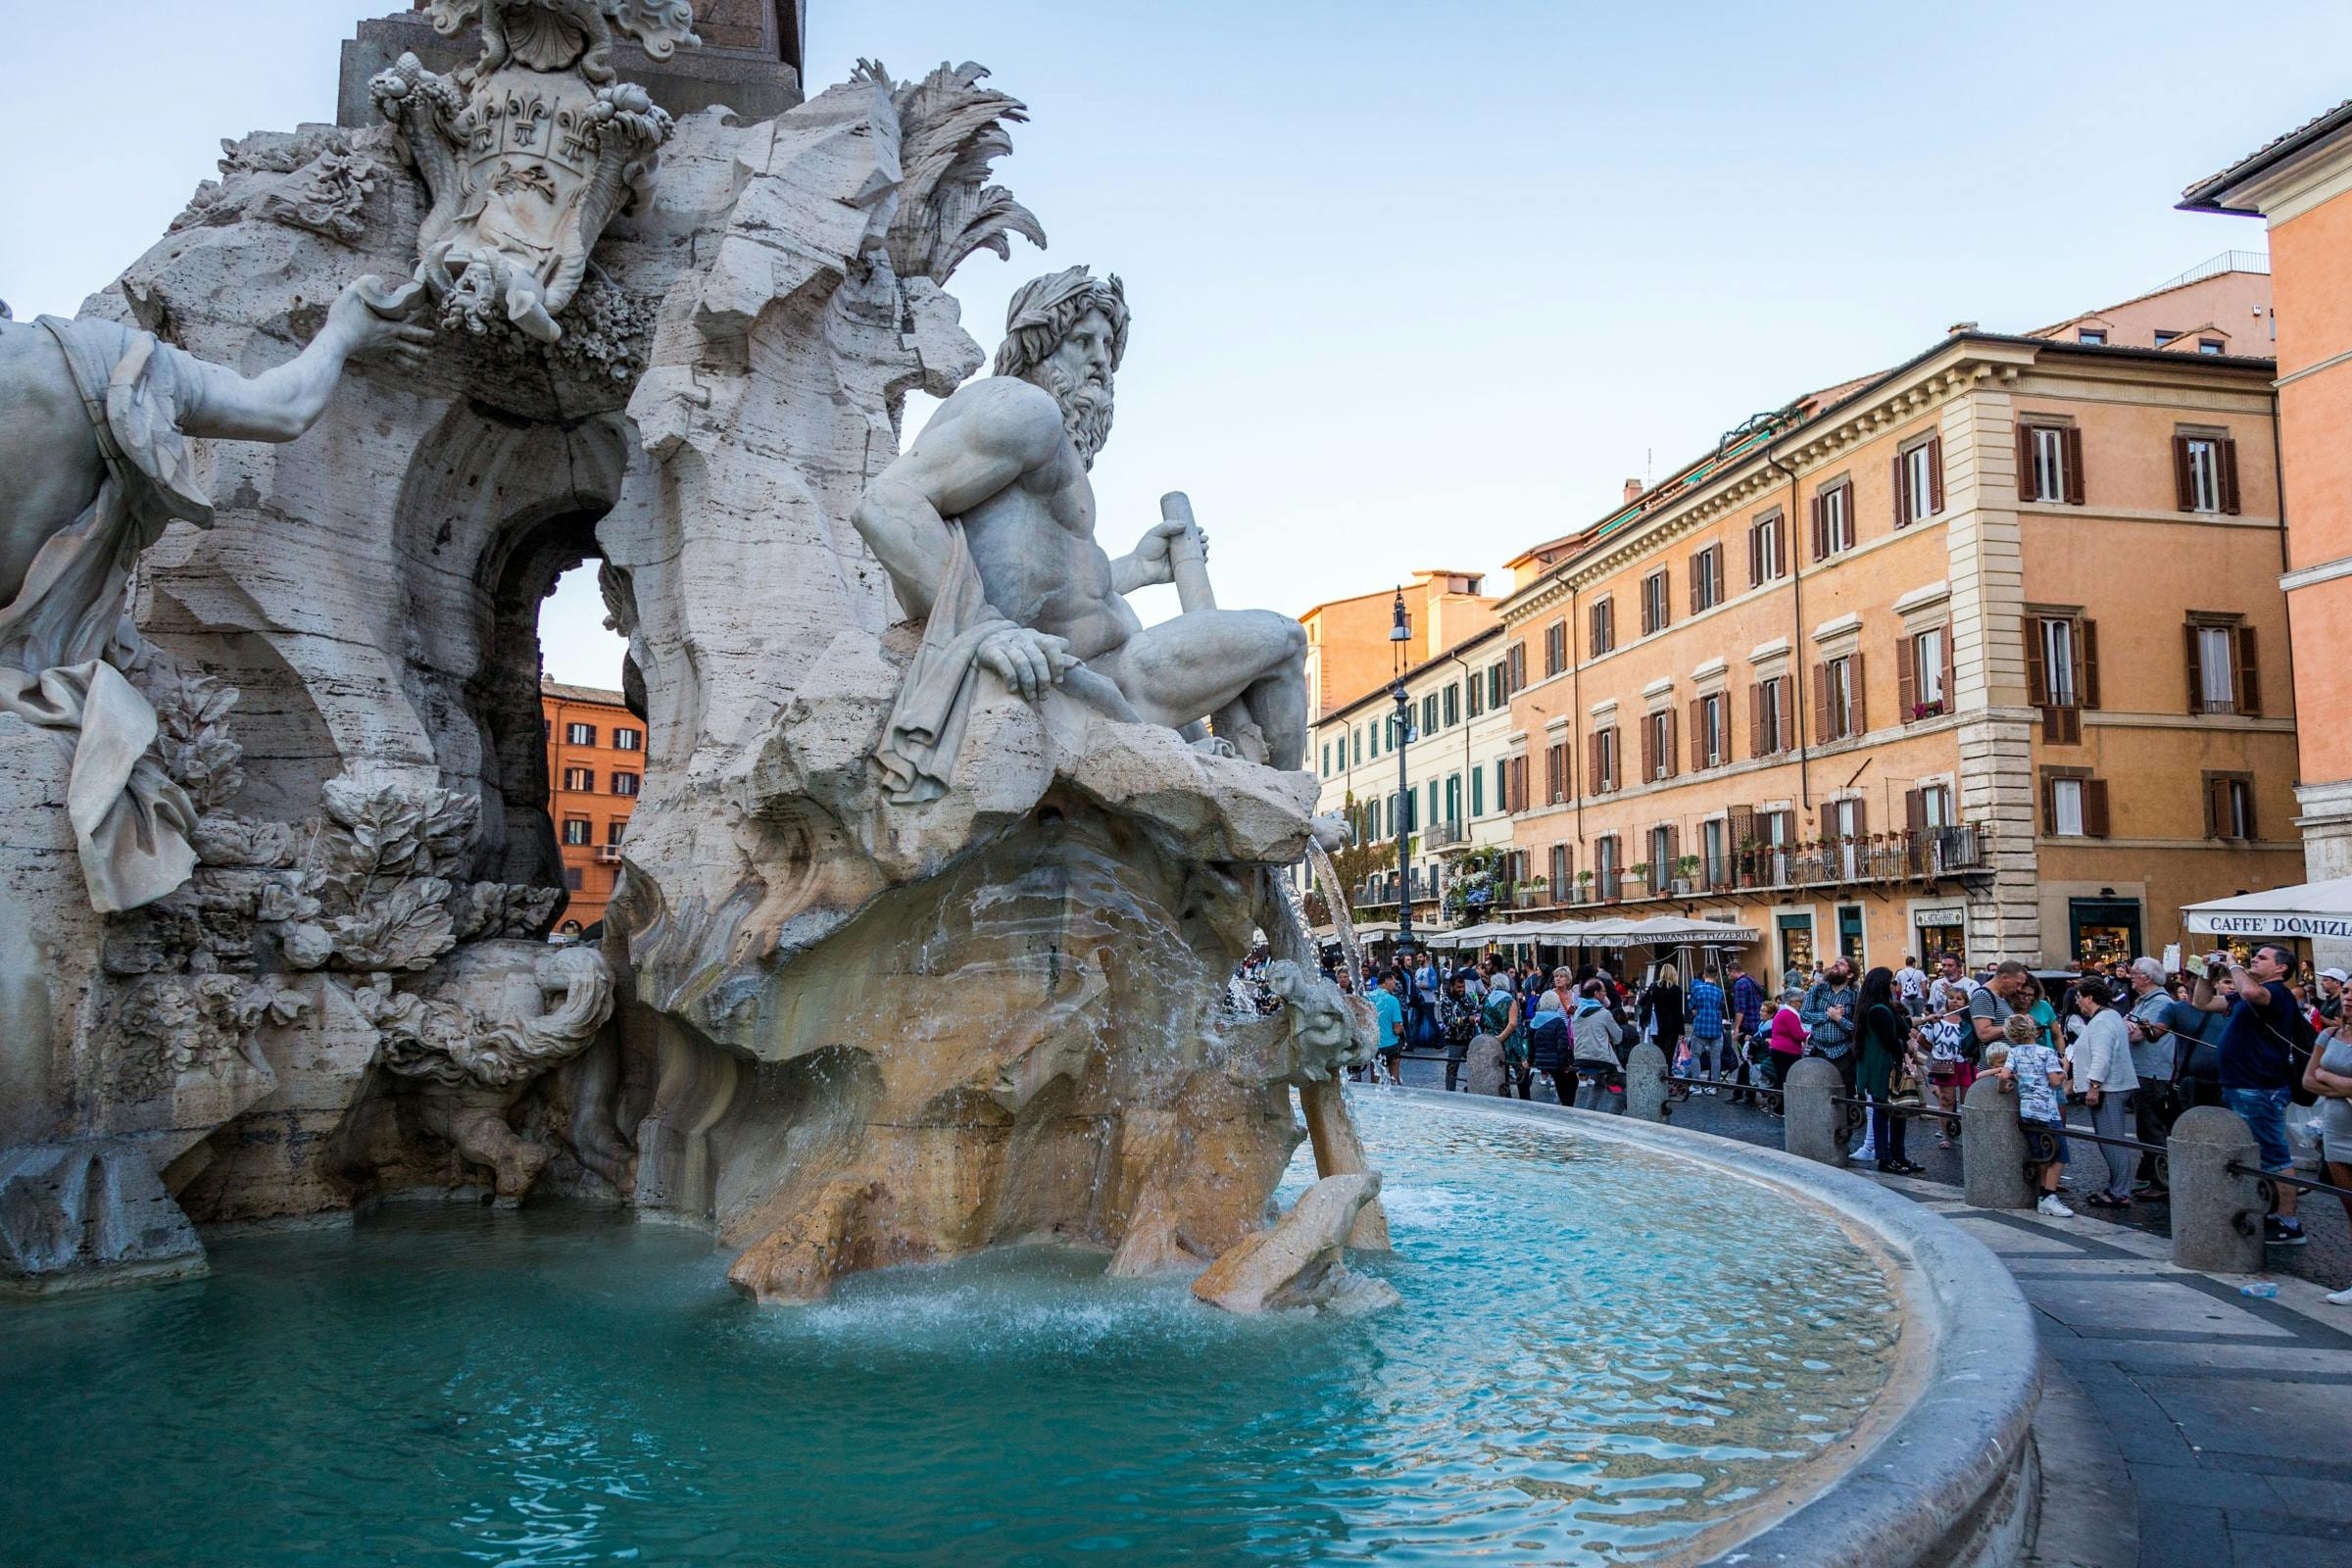 Tour a piedi del meglio di Roma con Piazza di Spagna, Fontana di Trevi, Pantheon e Piazza Navona